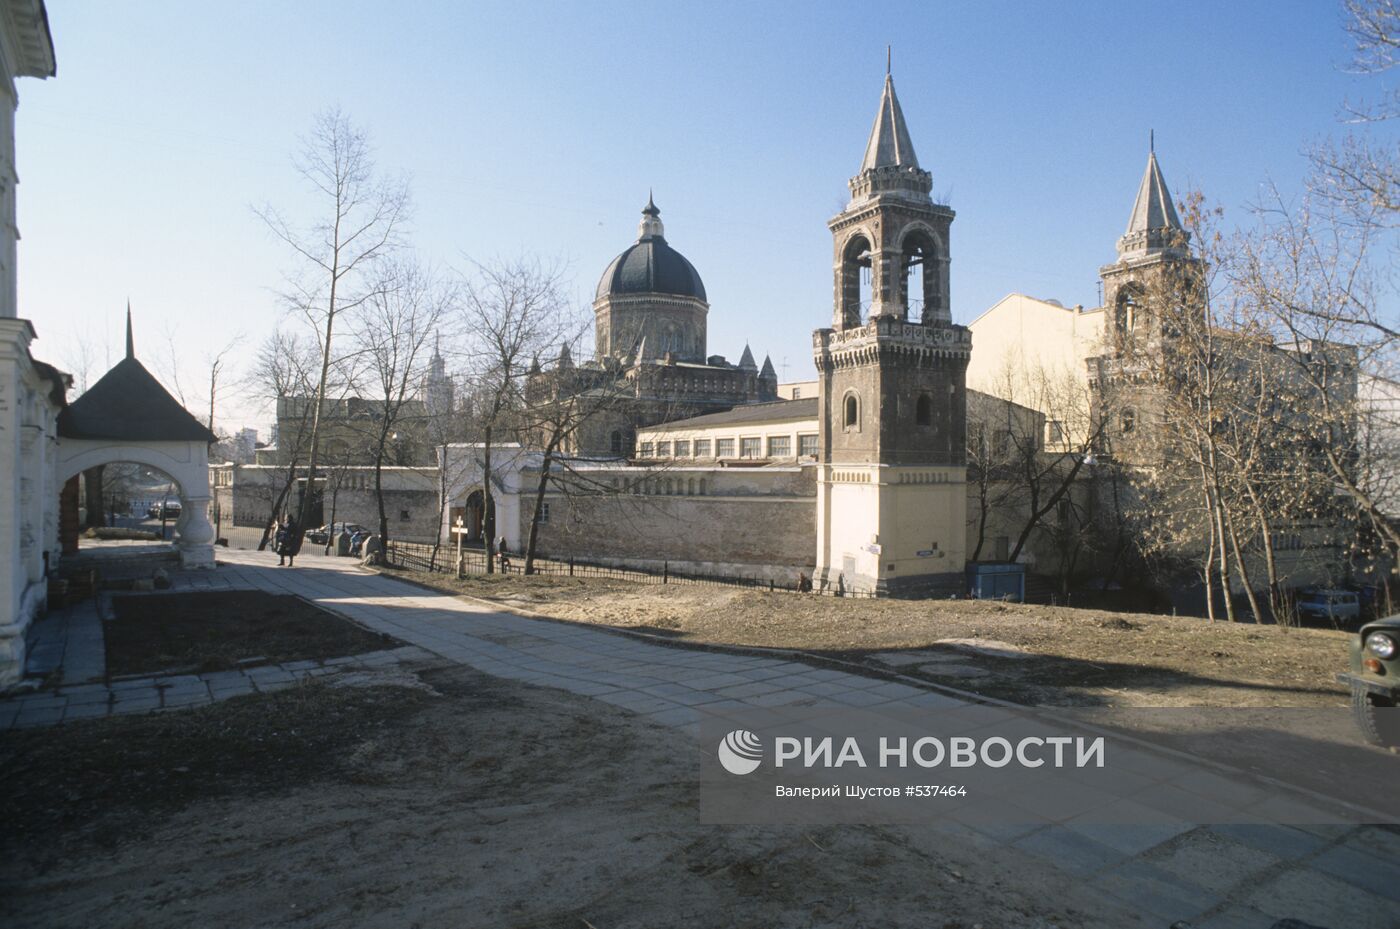 Ивановский монастырь